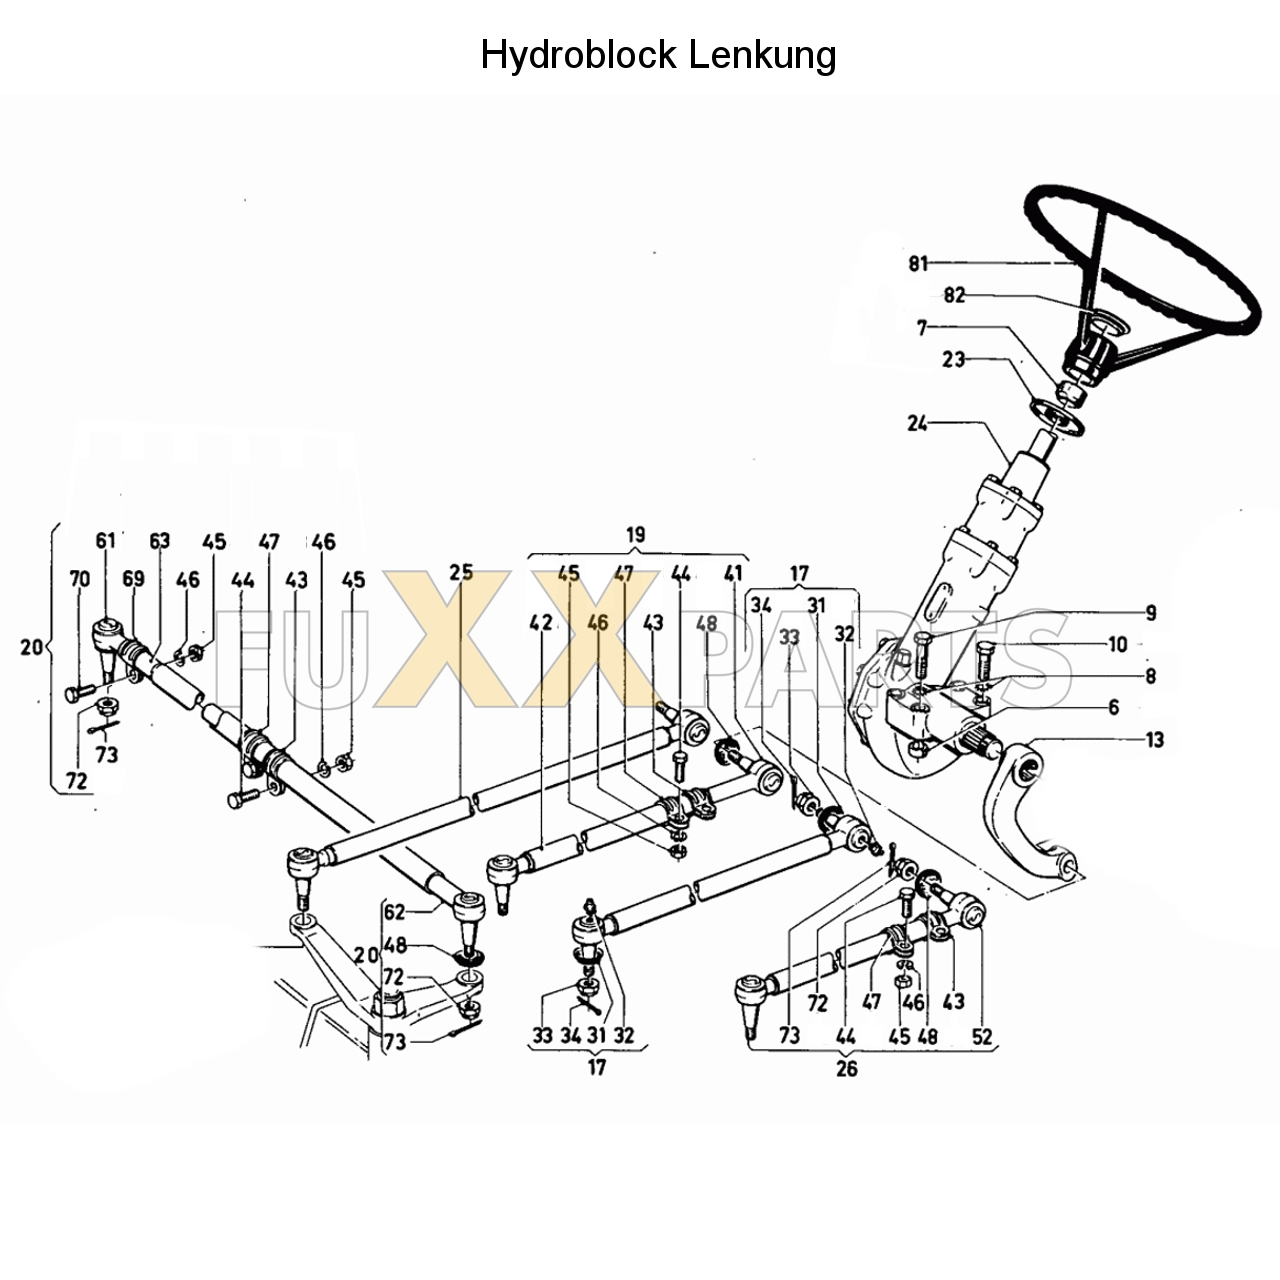 D 10006 Hydraulische Lenkung (Hydroblock)